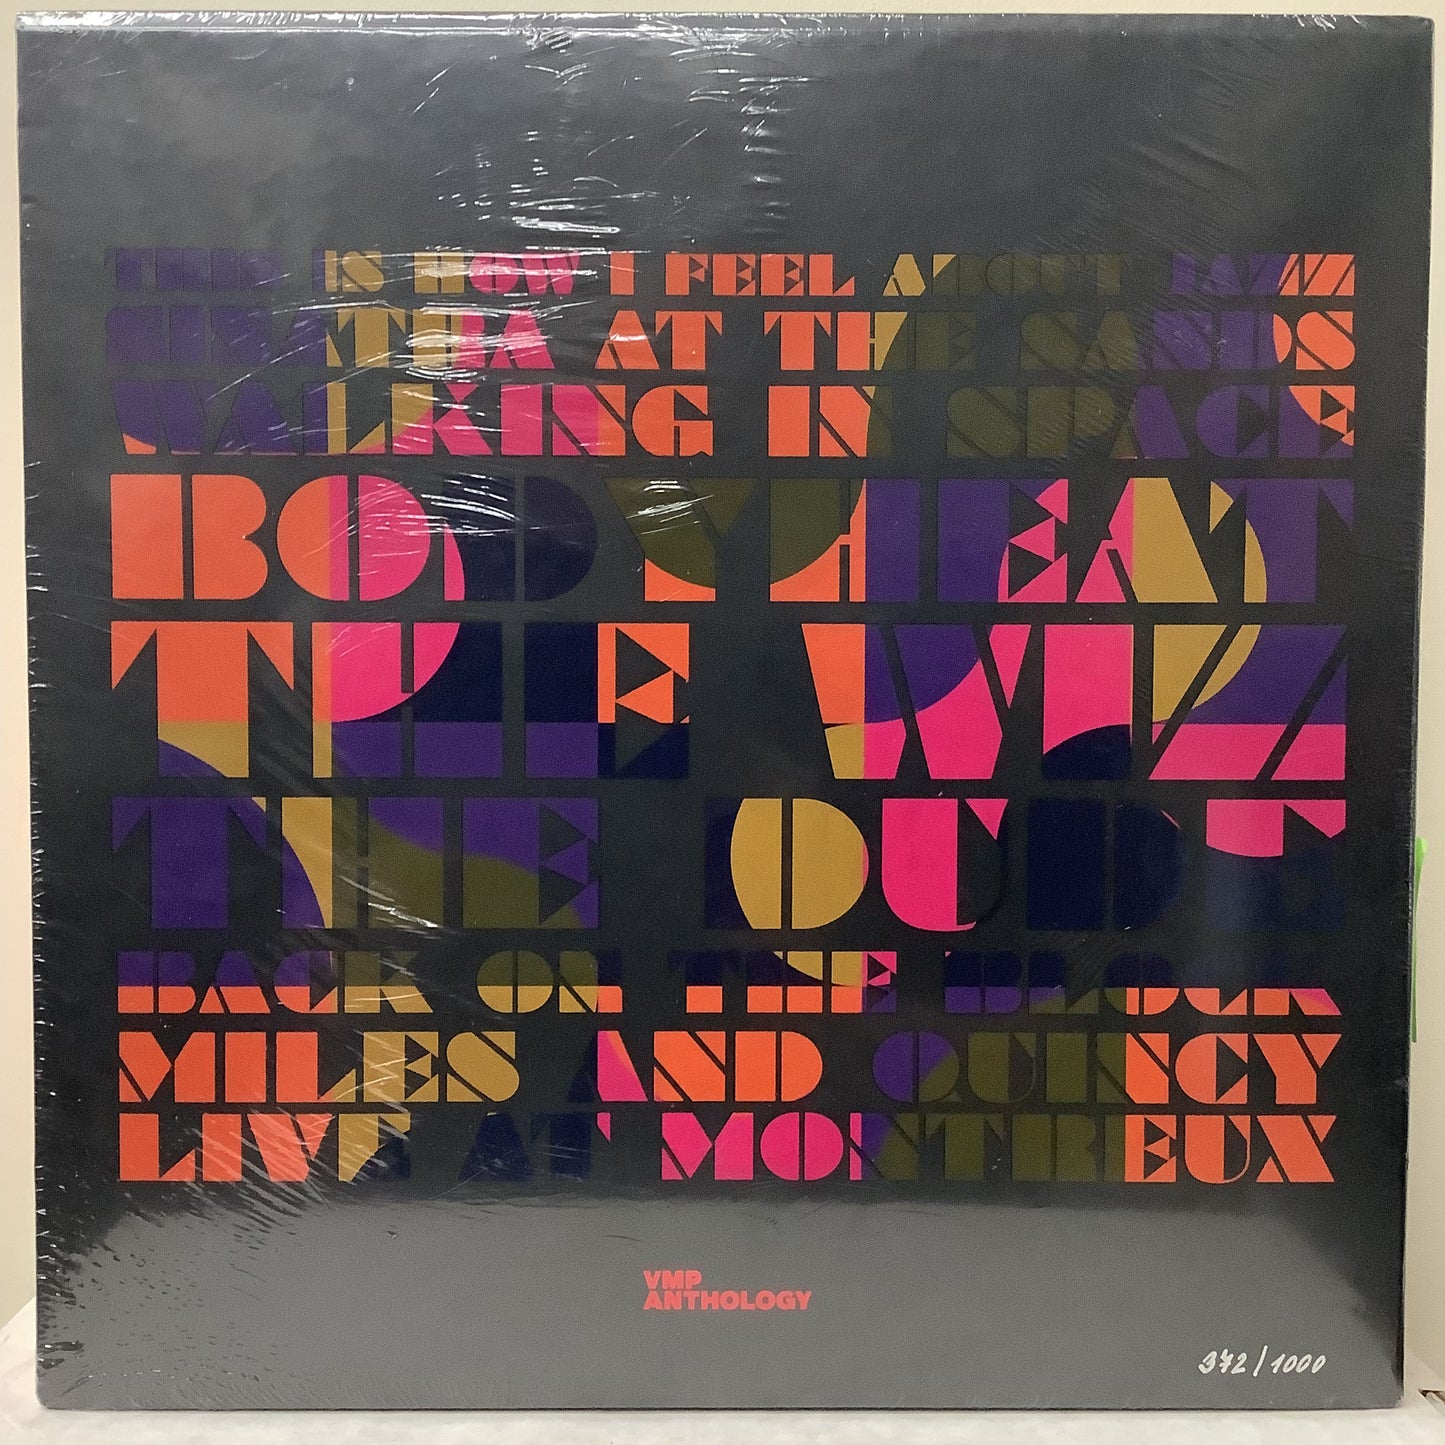 Quincy Jones - The Story of Quincy Jones - Vinyl Me Please LP Box Set